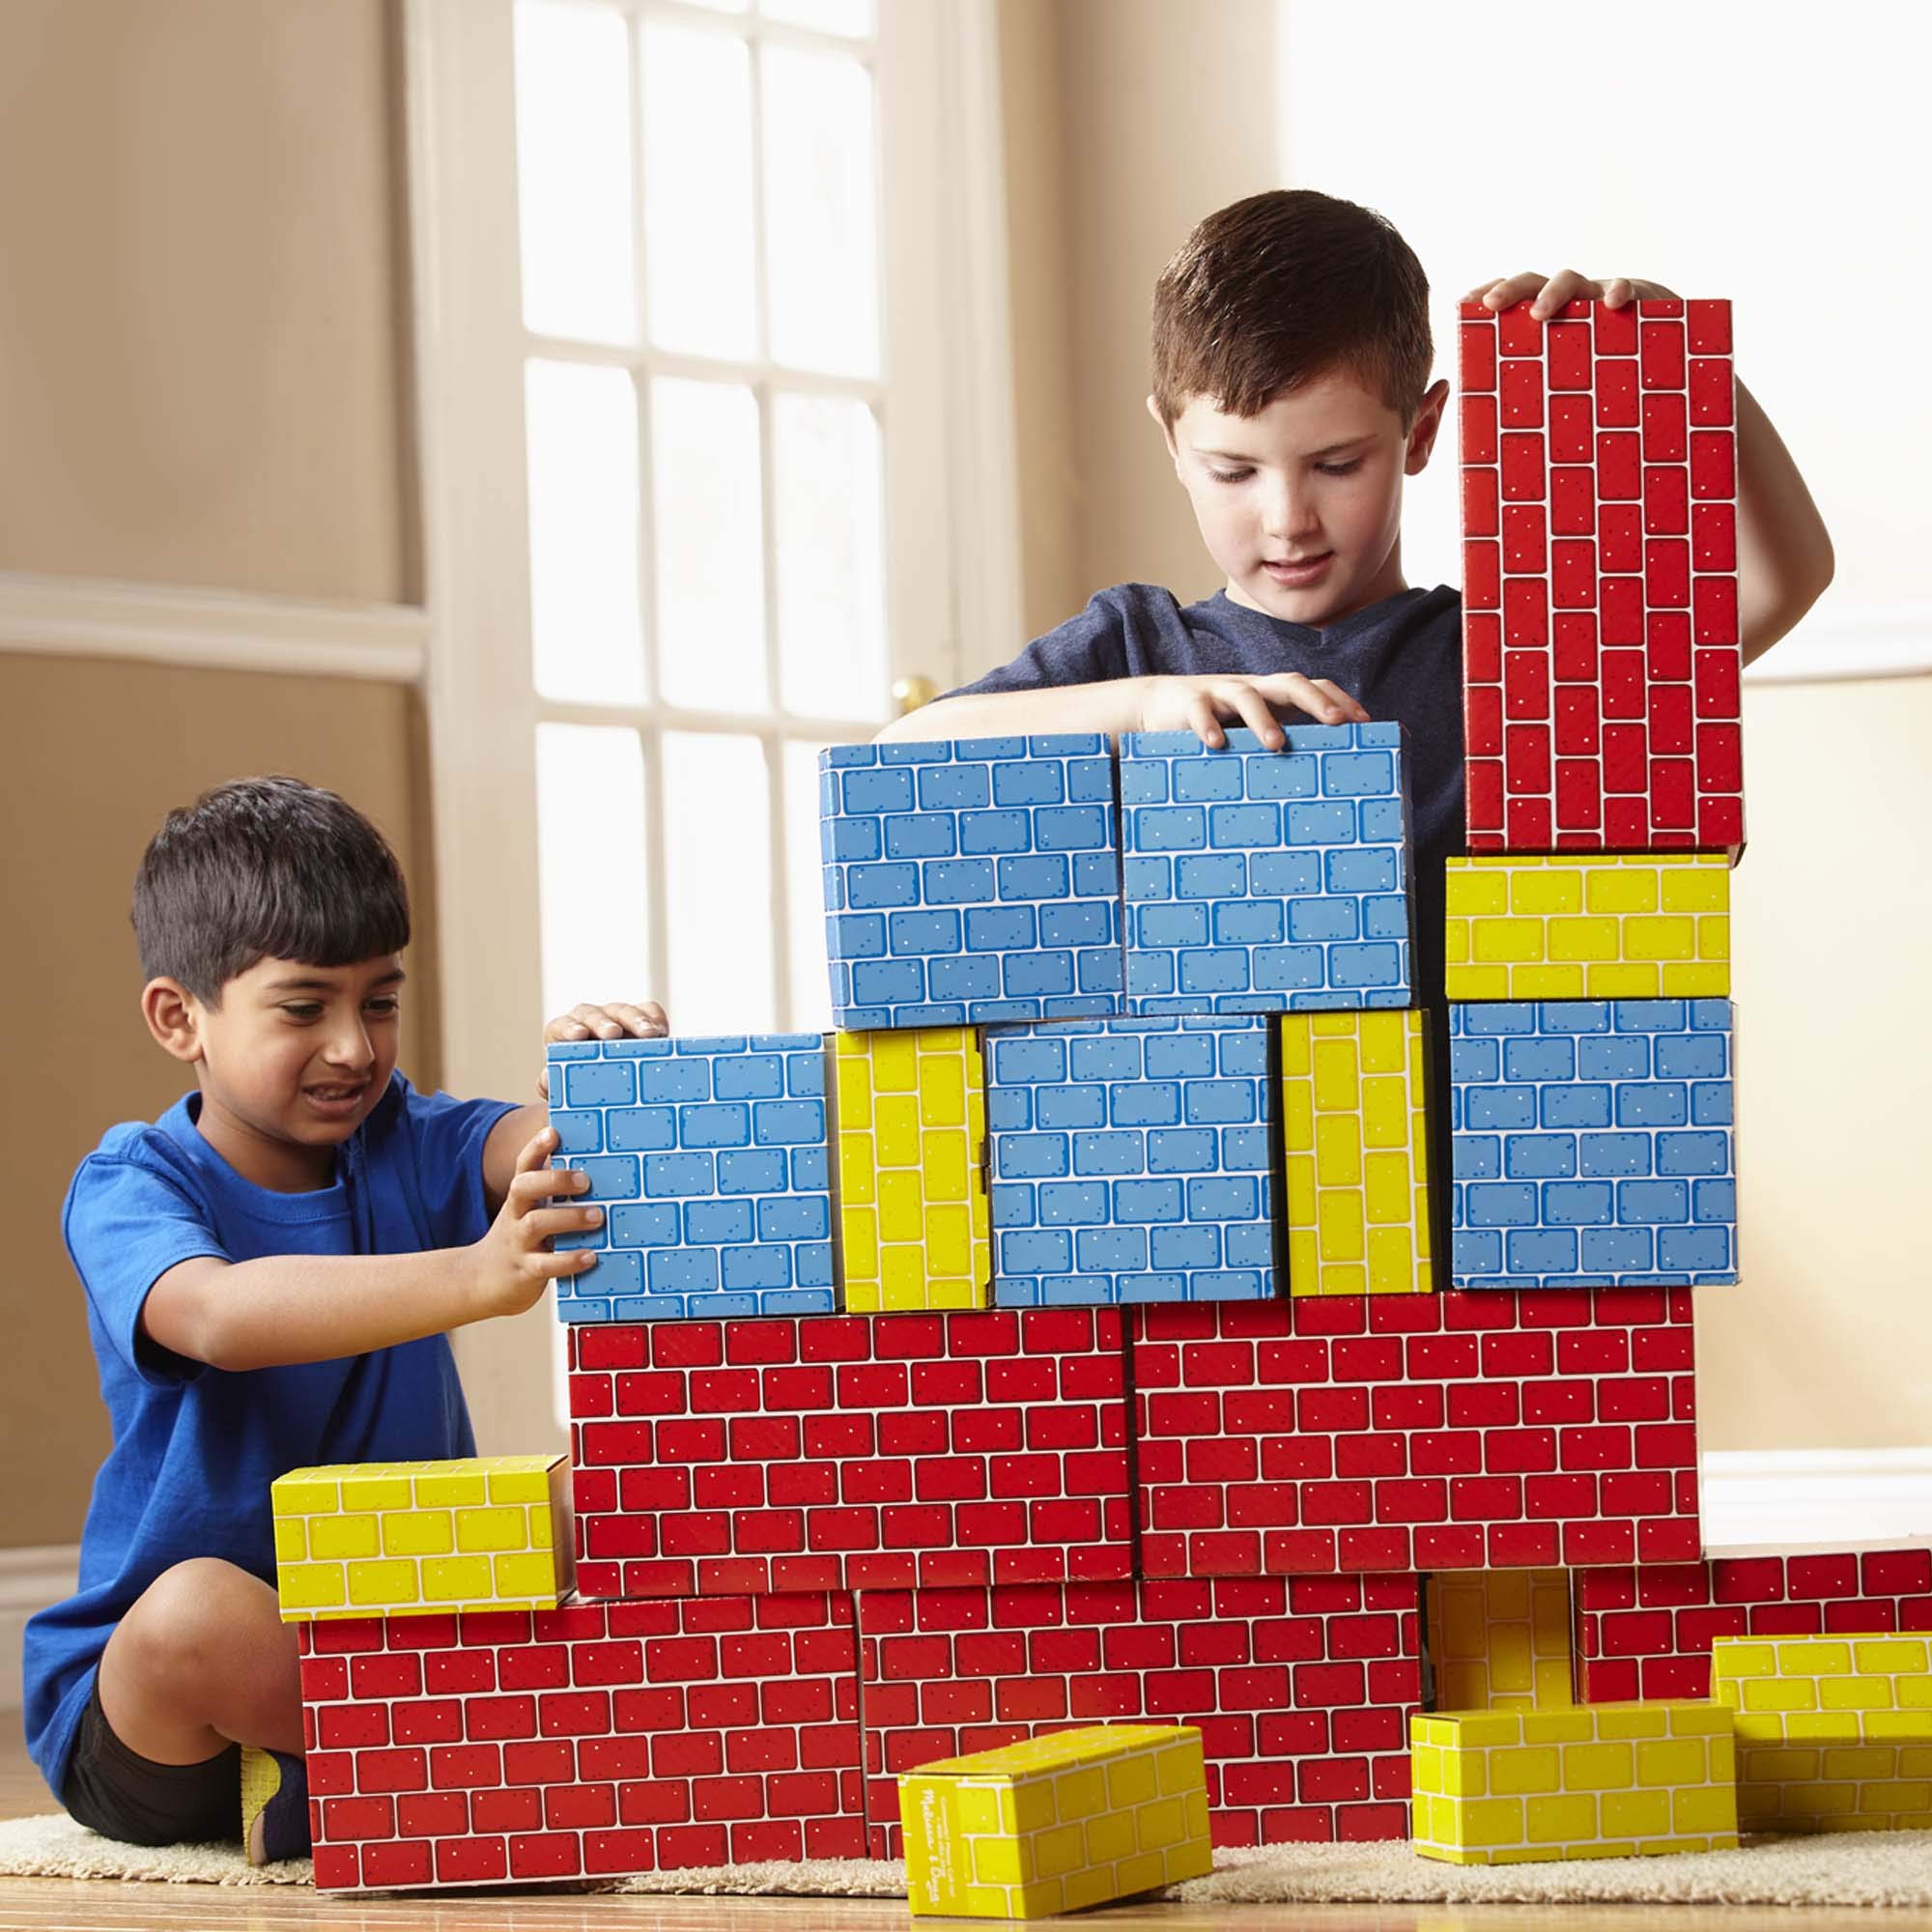 Melissa & Doug Deluxe Jumbo Cardboard Blocks (24 Pieces) - Pretend Brick For Building